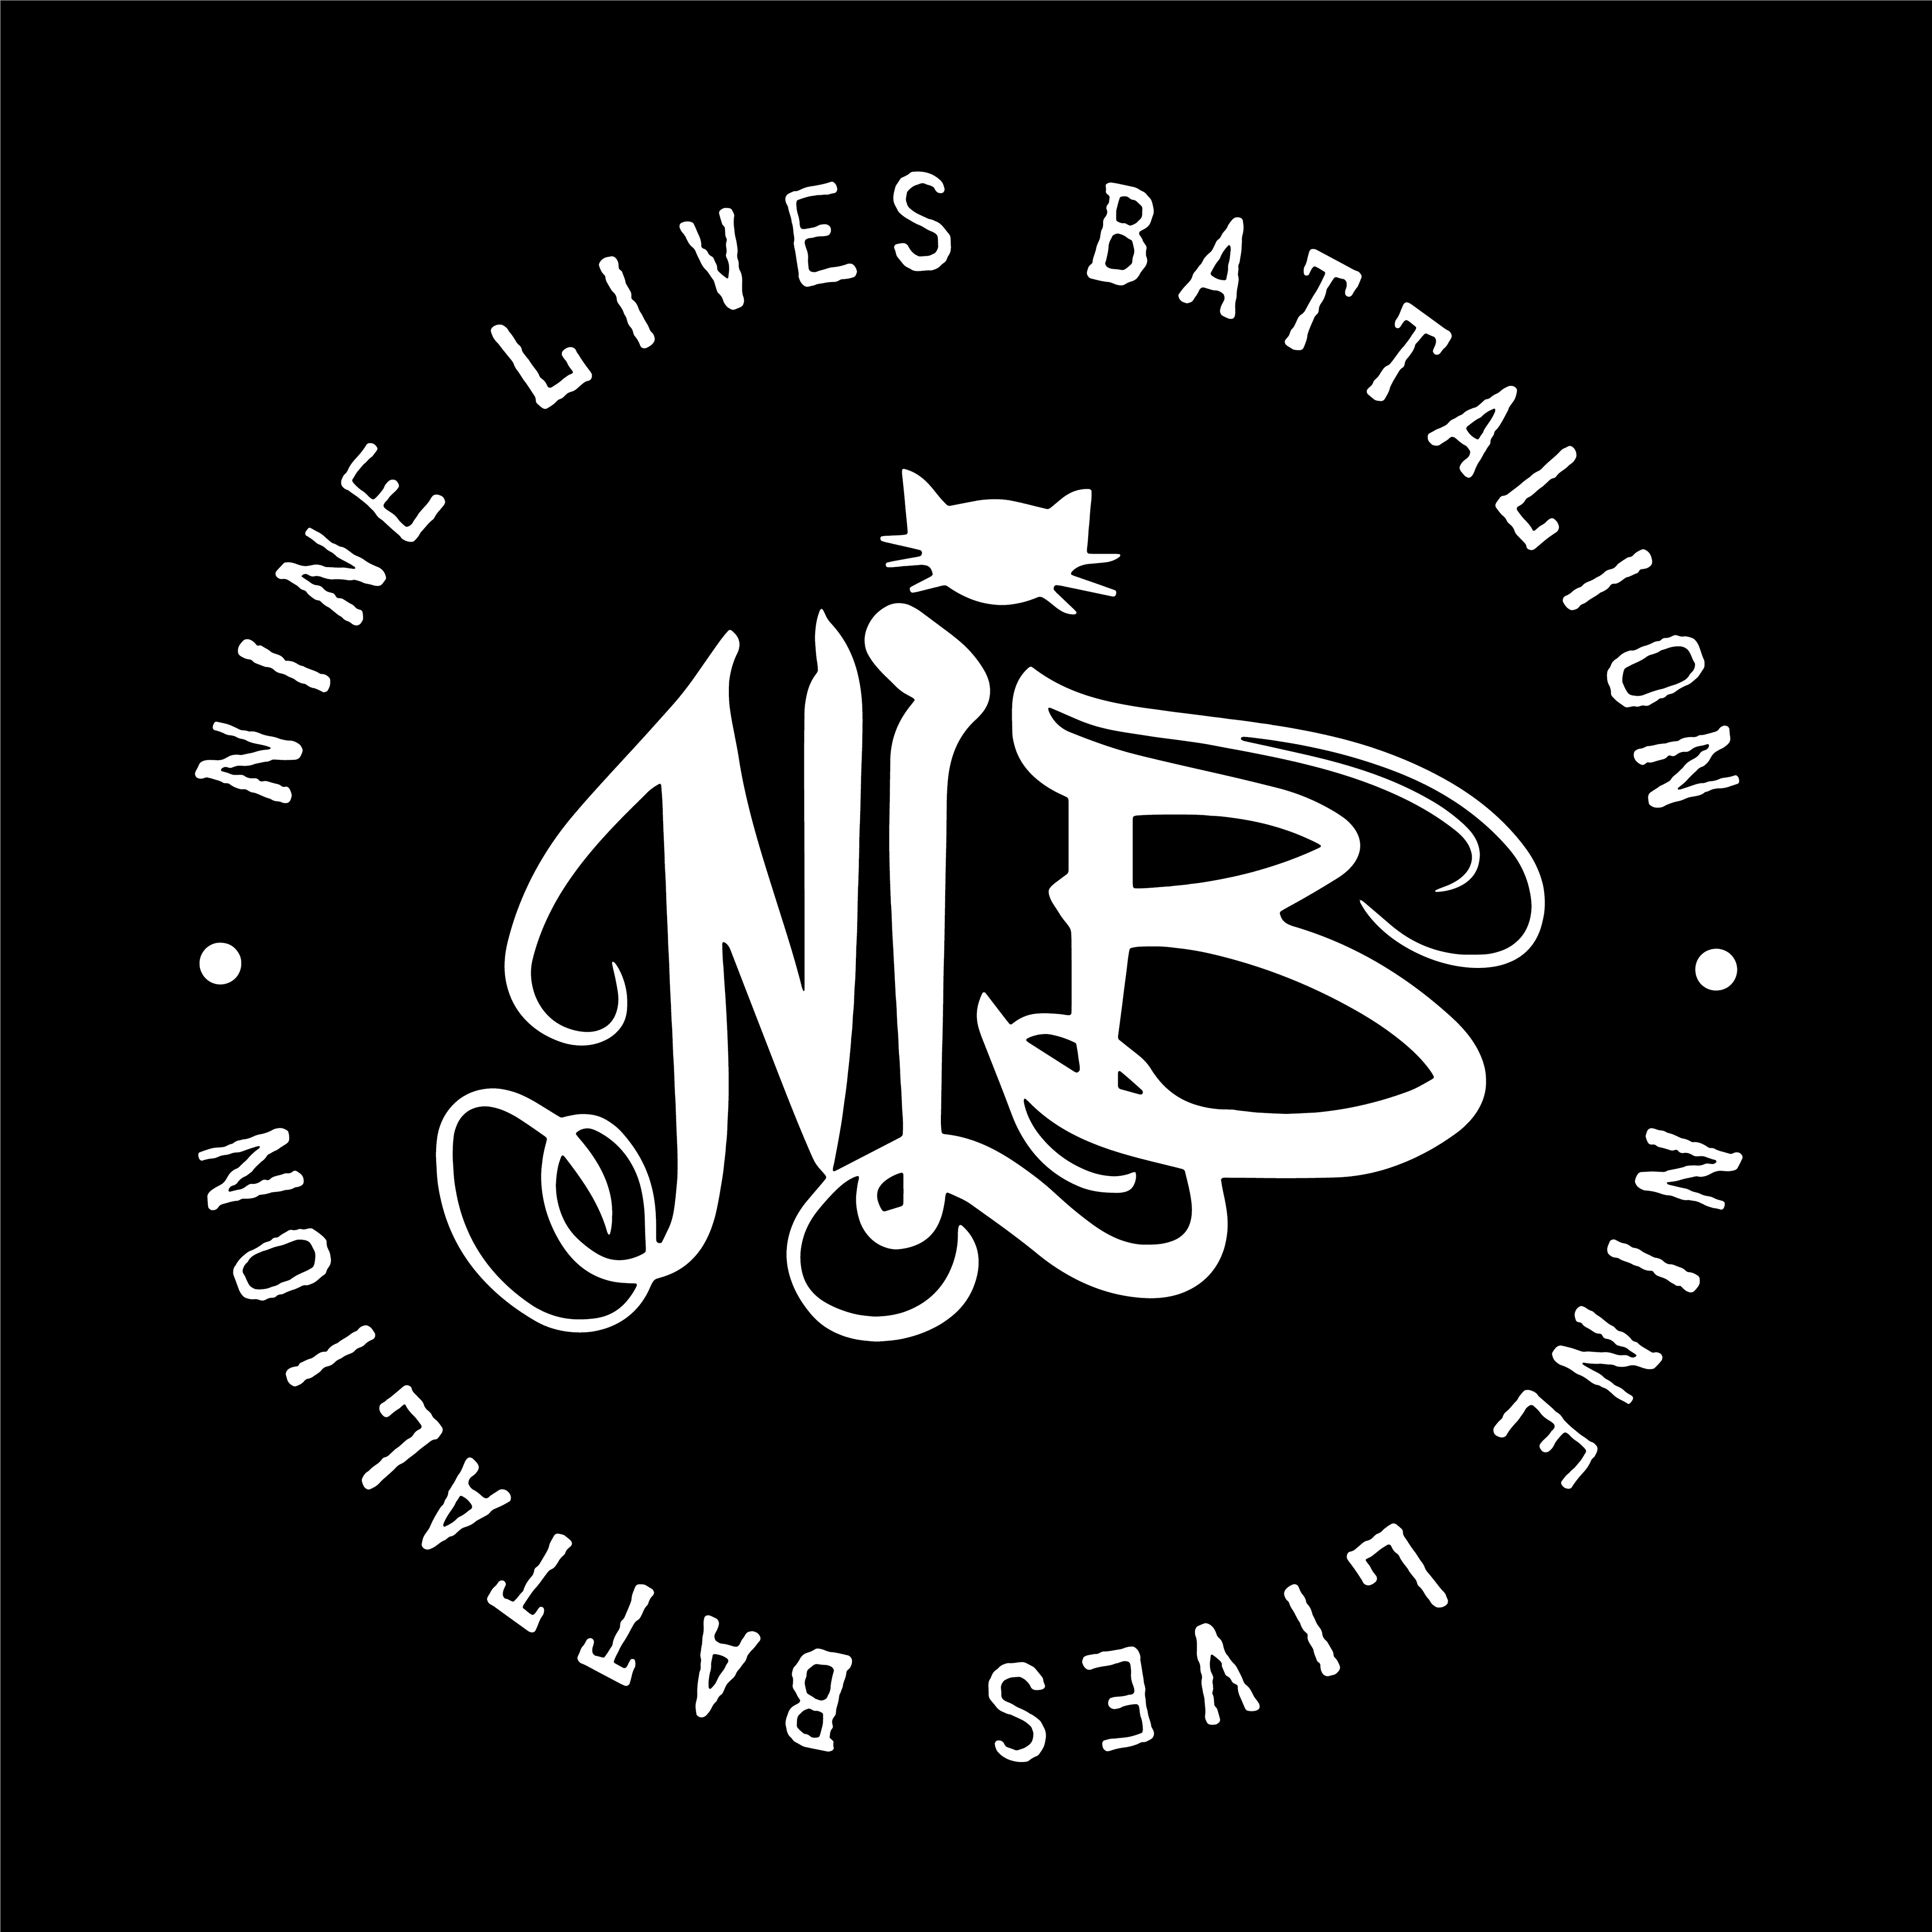 Nine Lives Battalion Genesis